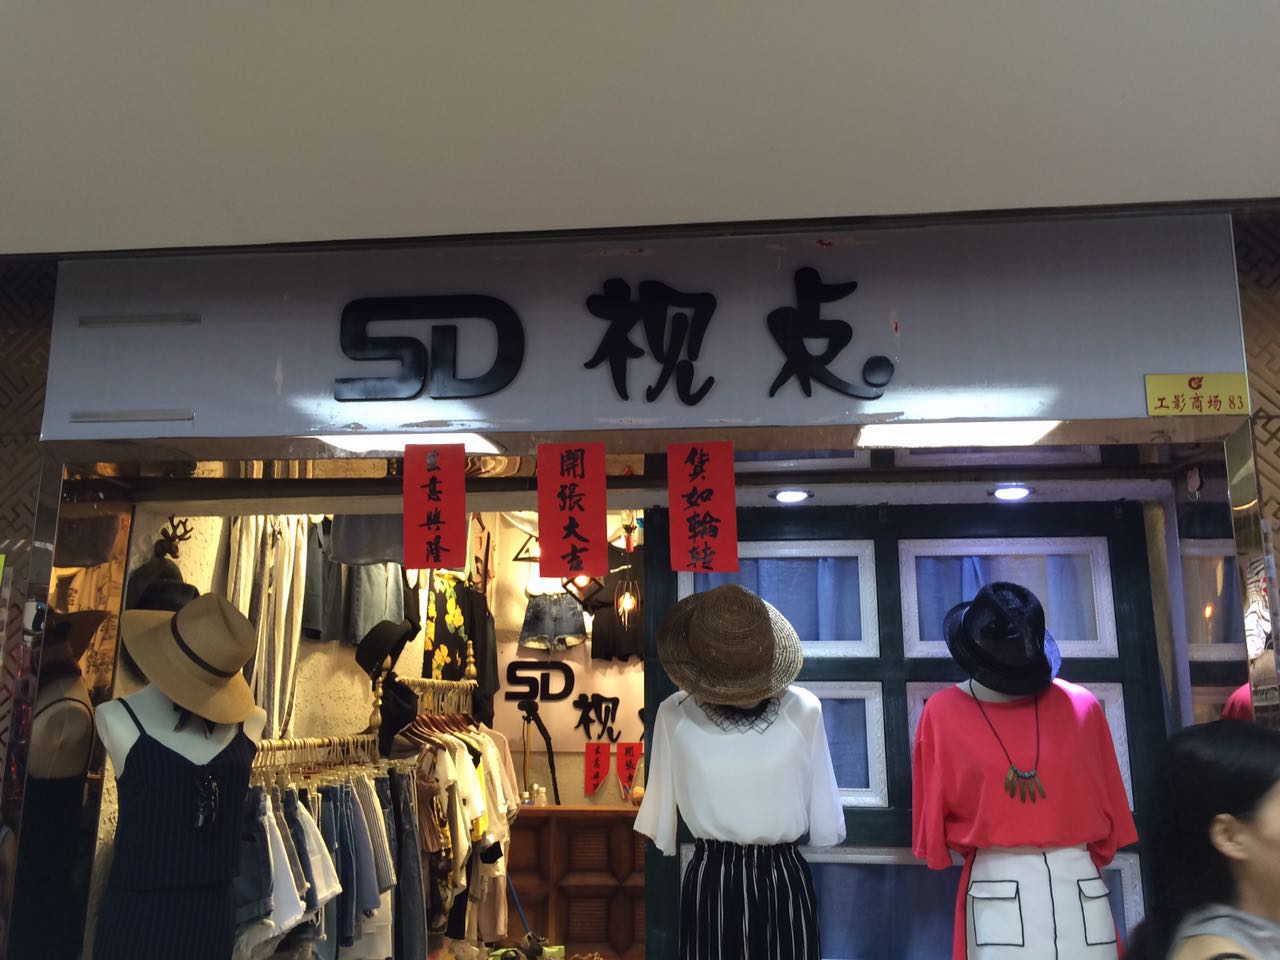 5D视点服装店